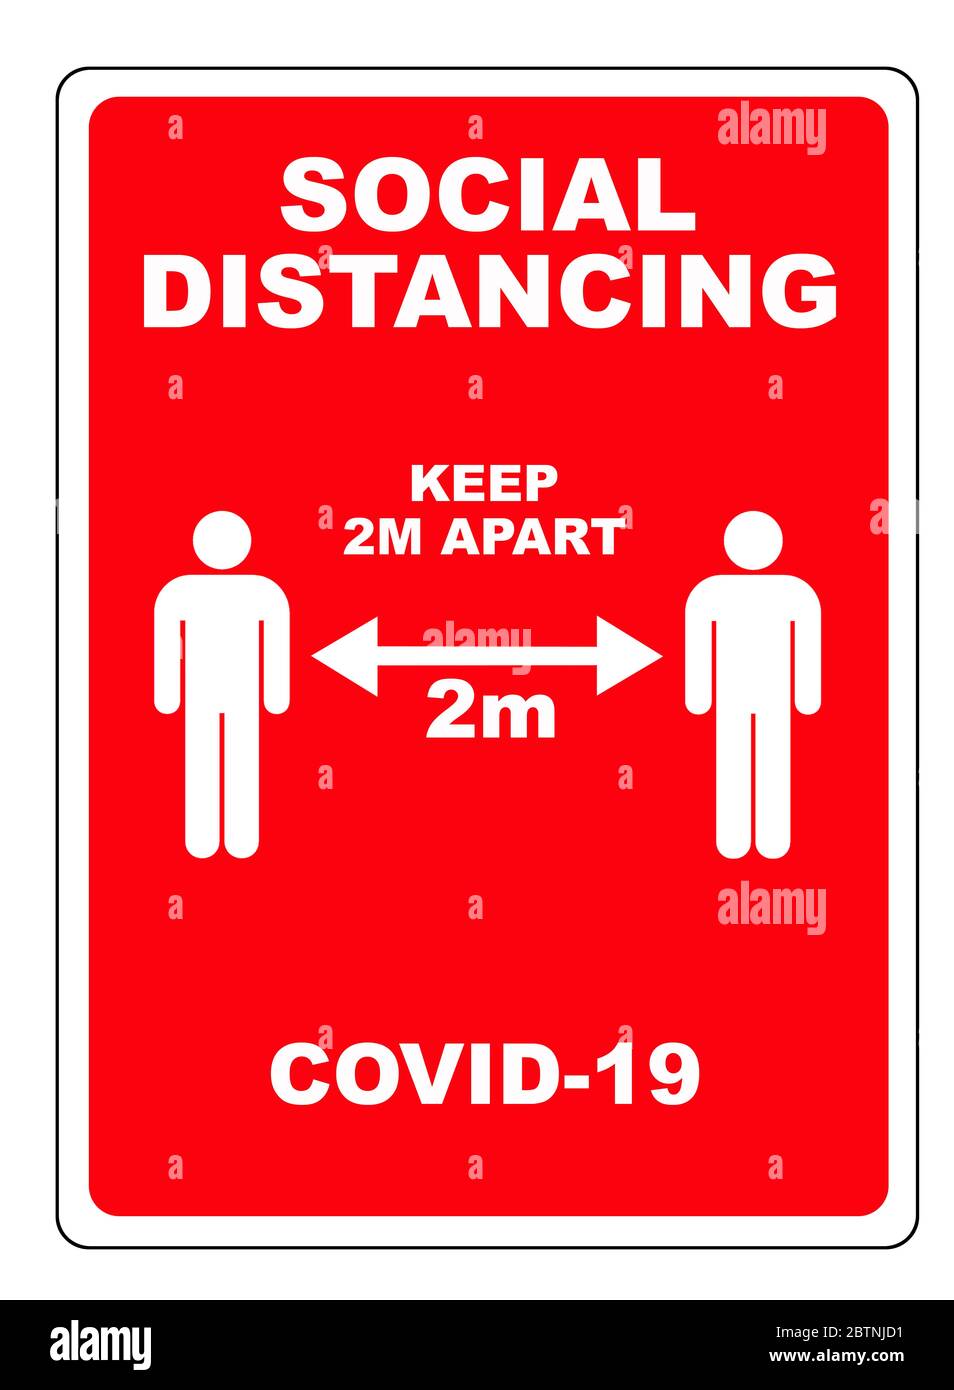 Simbolo di avvertimento rettangolare di distanza sociale di 2 metri Foto Stock